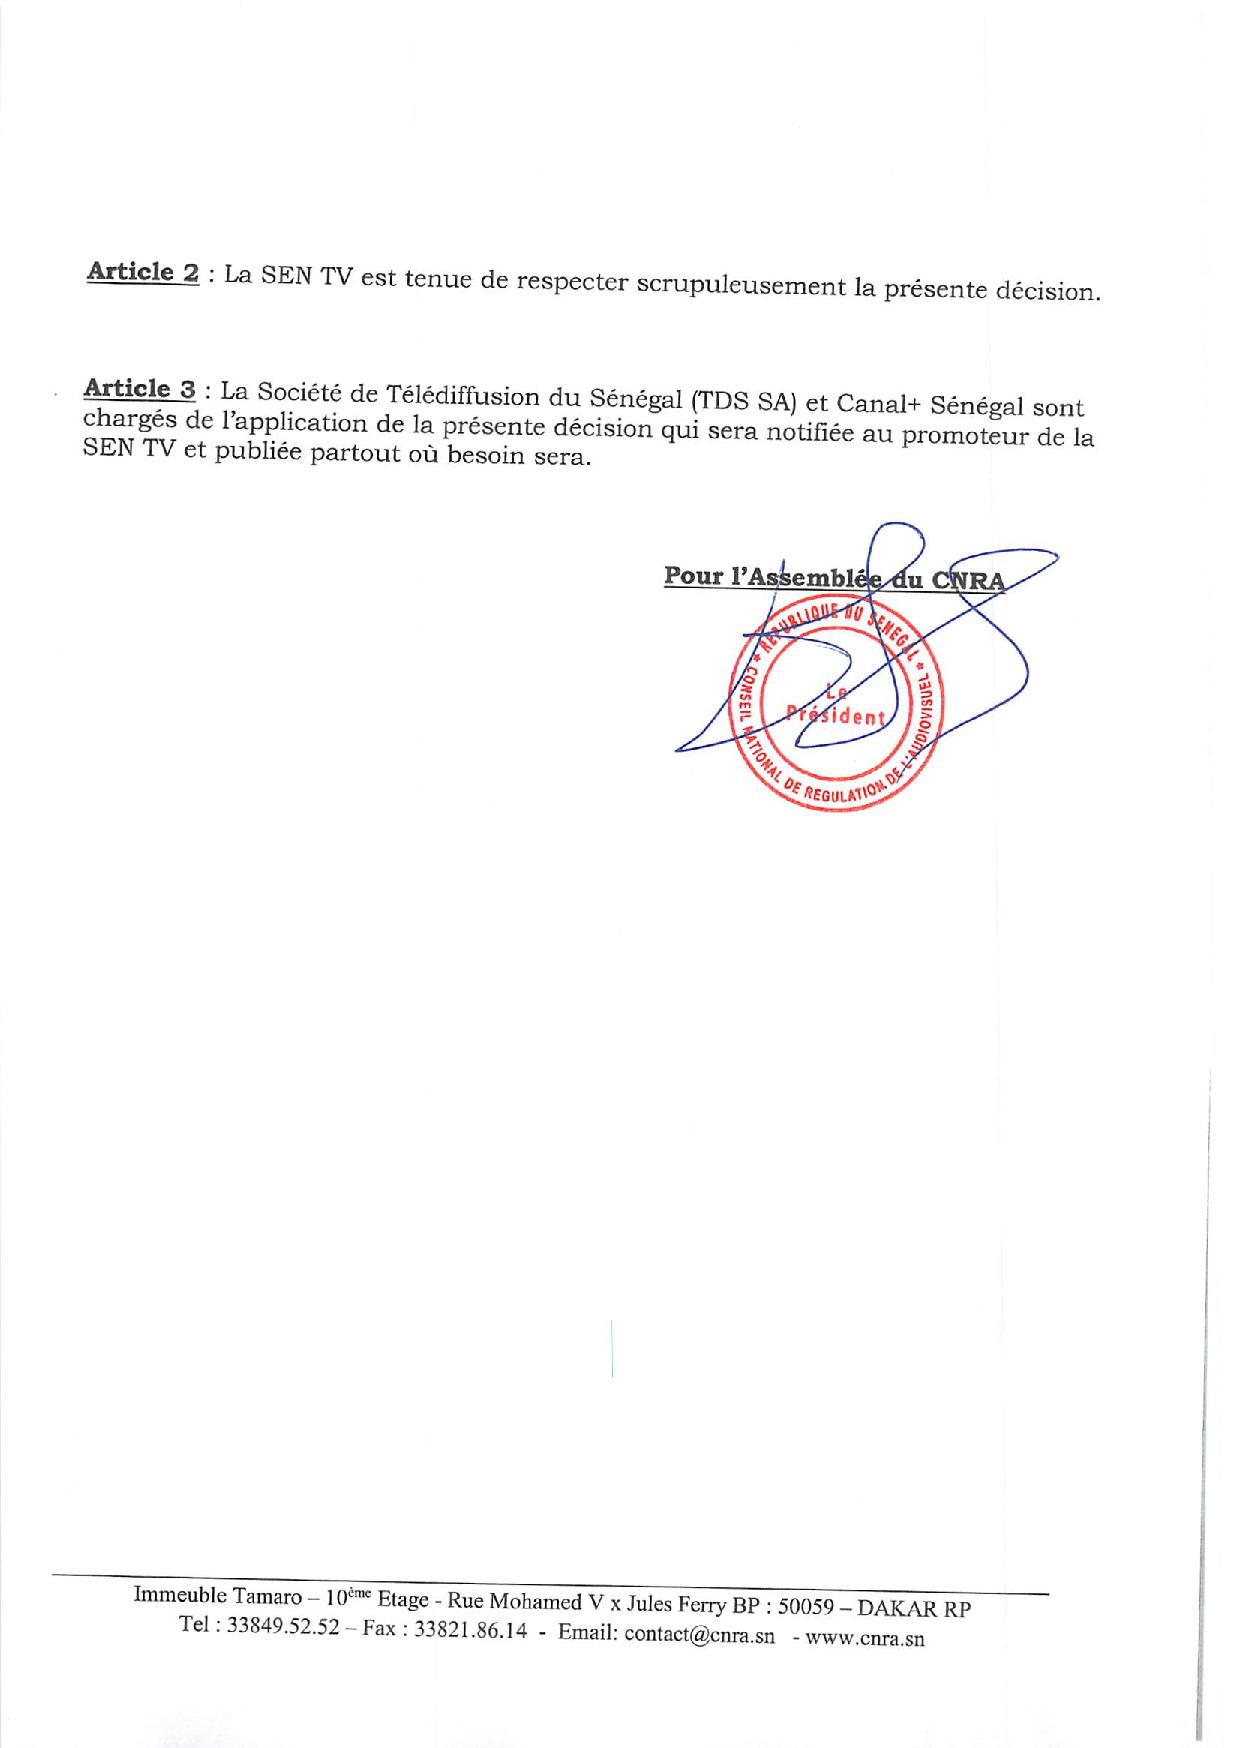 CNRA - Suspension de 7 jours des programmes de SEN TV: Bougane Guèye Dany joue-t-il au pocker ?